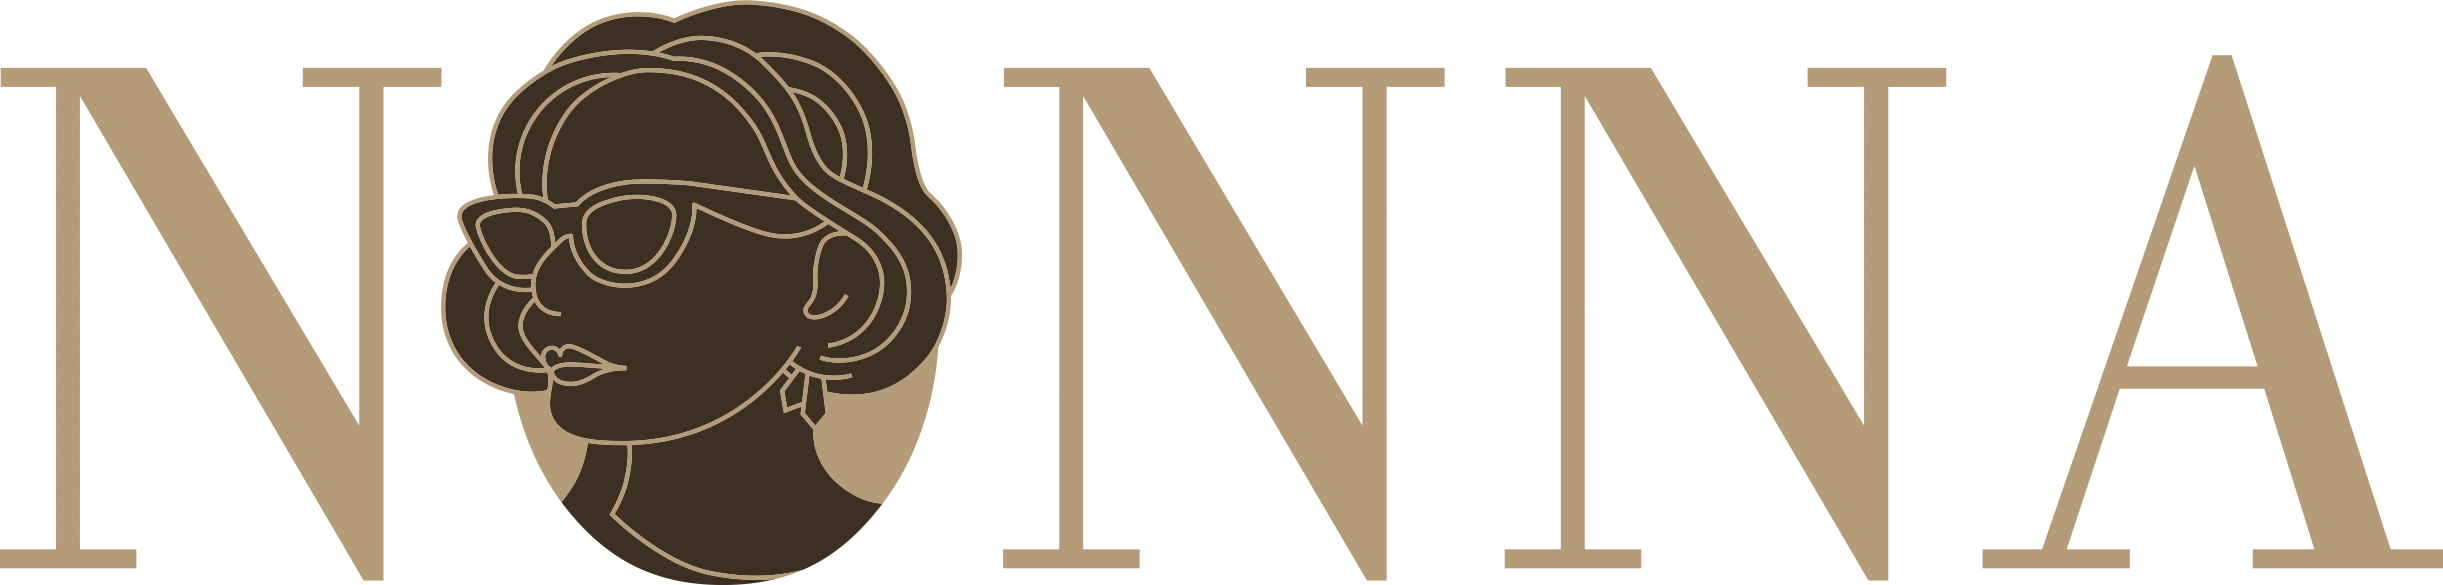 NONNA Logo